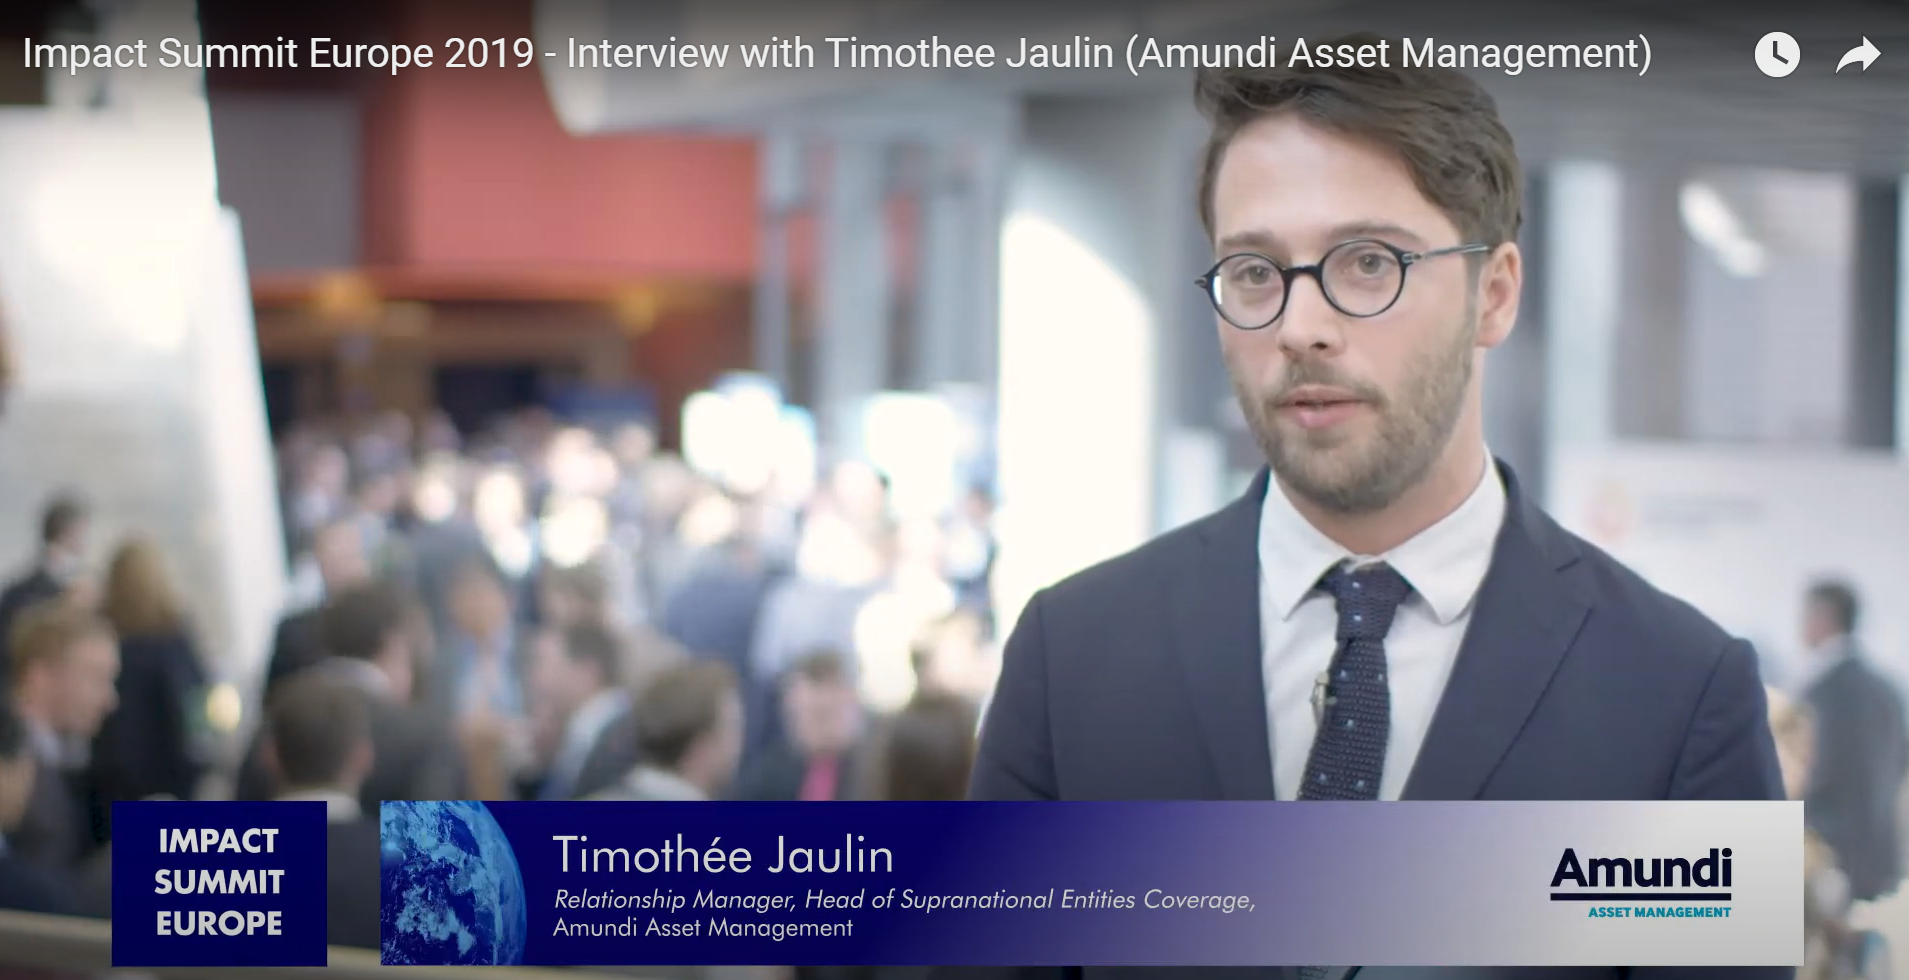 Timothee Jaulin I Amundi Asset Management